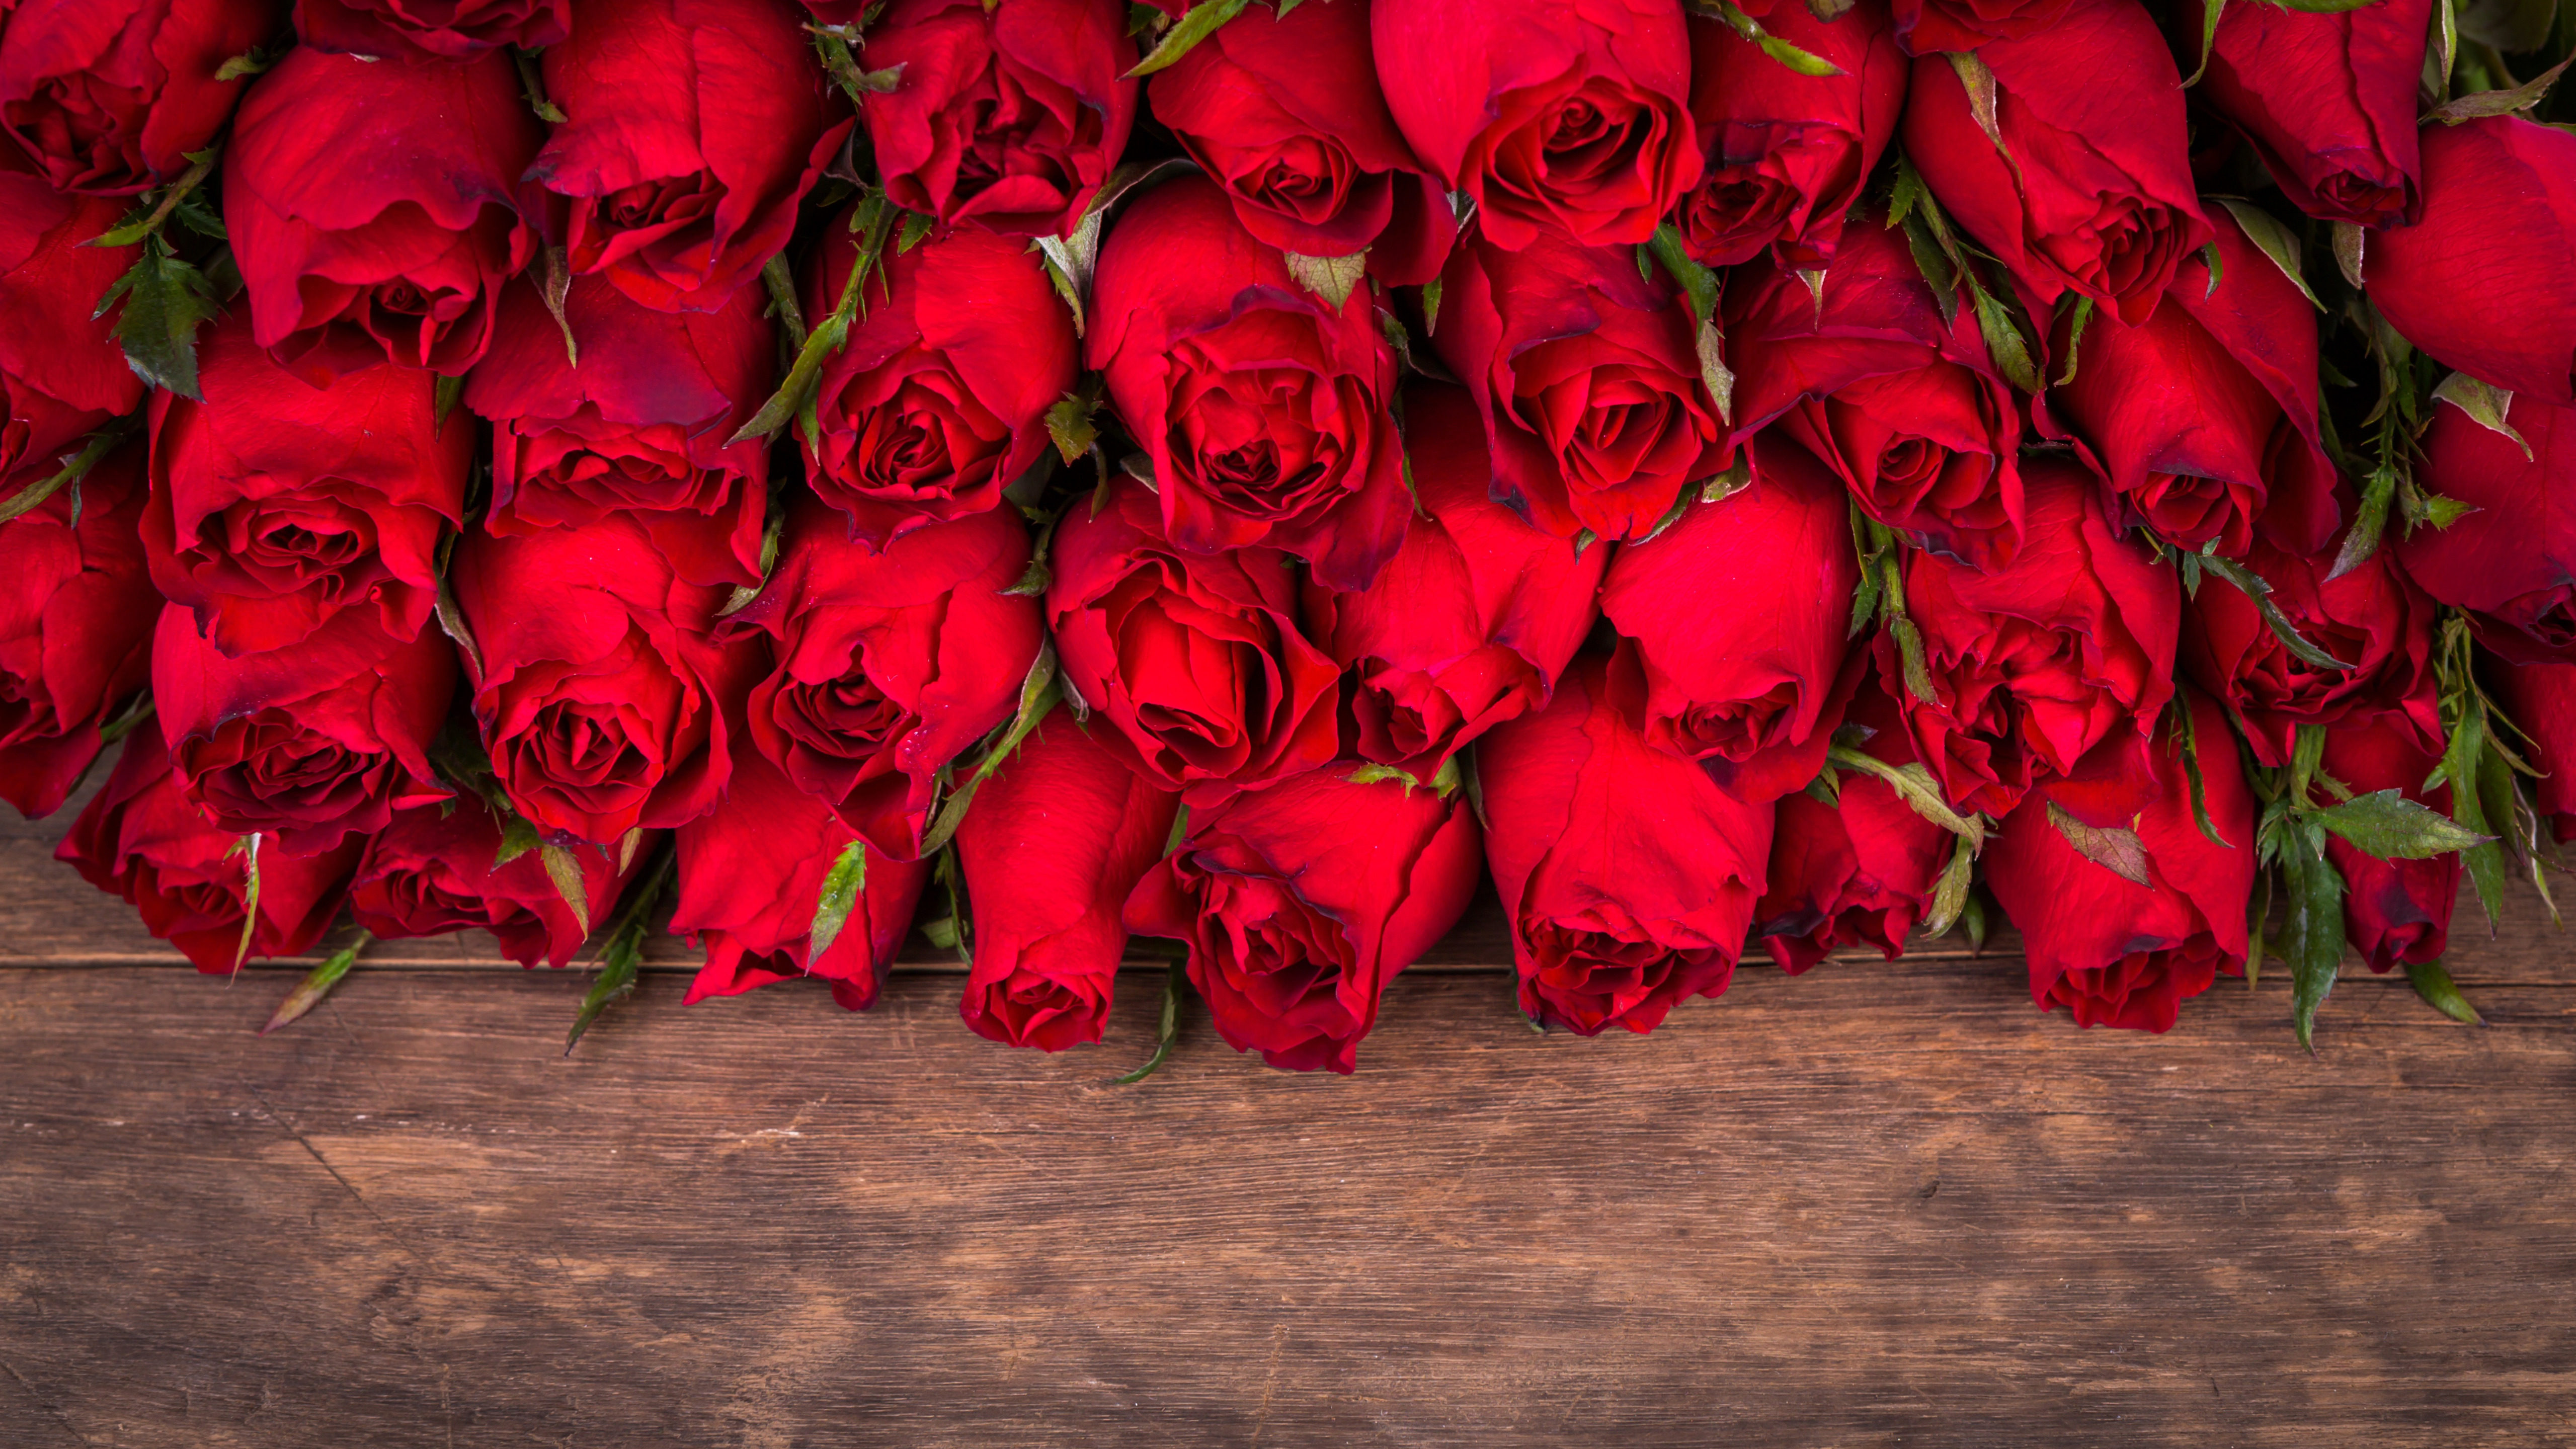 Ютуб поздравления с днем рождения музыкальное. Поздравления с днём рождения розы. Открытки с днём рождения женщине. С днем рождения женщине открытка розы. Открытки с днём рождения женщине красные розы.